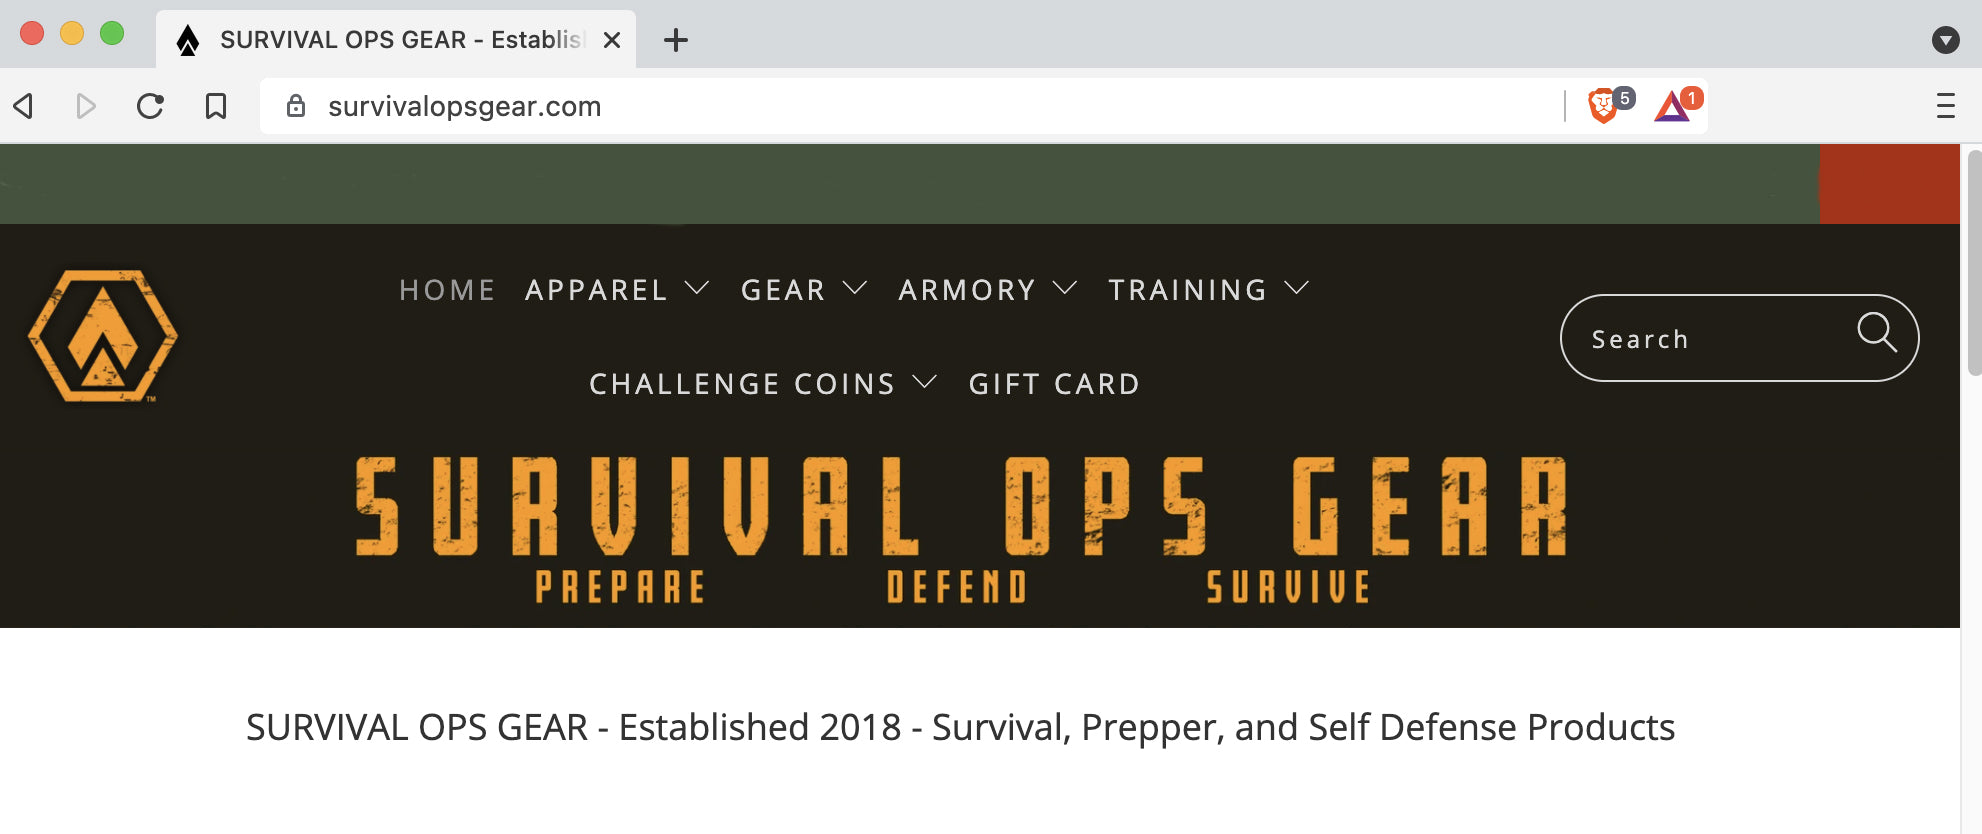 survivalopsgear.com